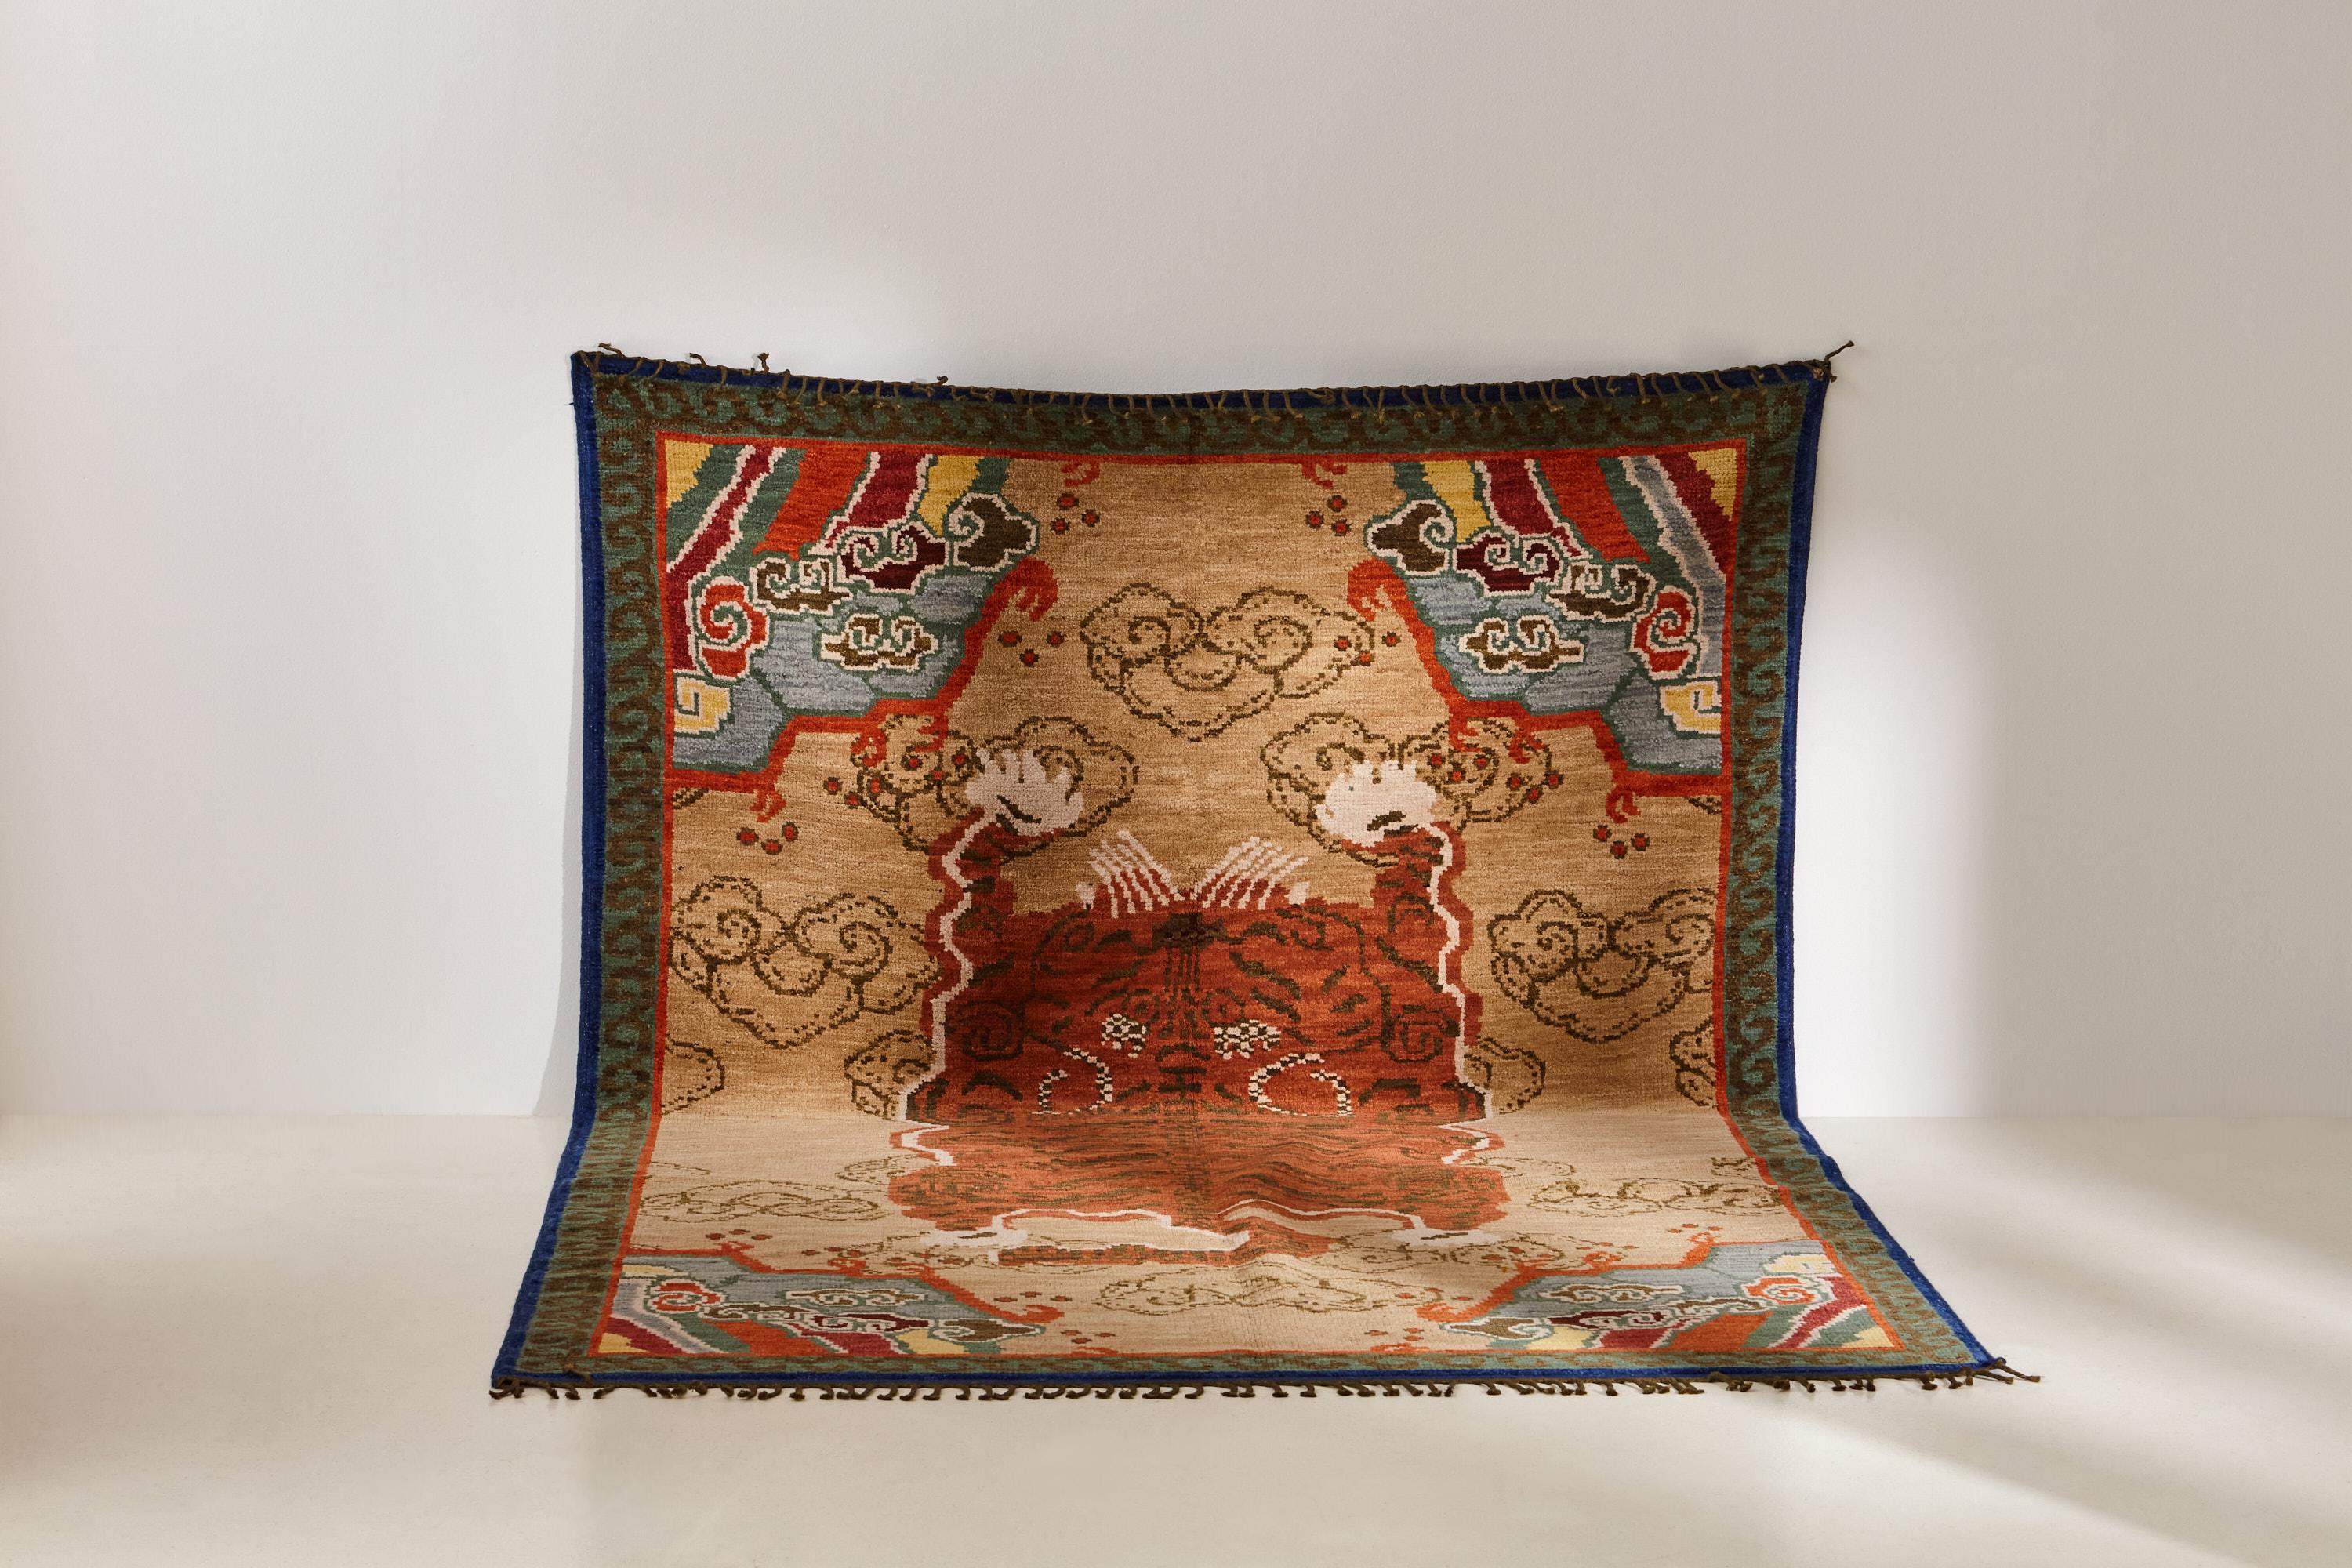 Le tapis Tiger est un véritable chef-d'œuvre inspiré des motifs traditionnels tibétains. Les tapis tigrés traditionnels tibétains nous ont séduits par leur équilibre entre délicatesse et audace.

Fabriqué à partir de la laine Ghazni de haute